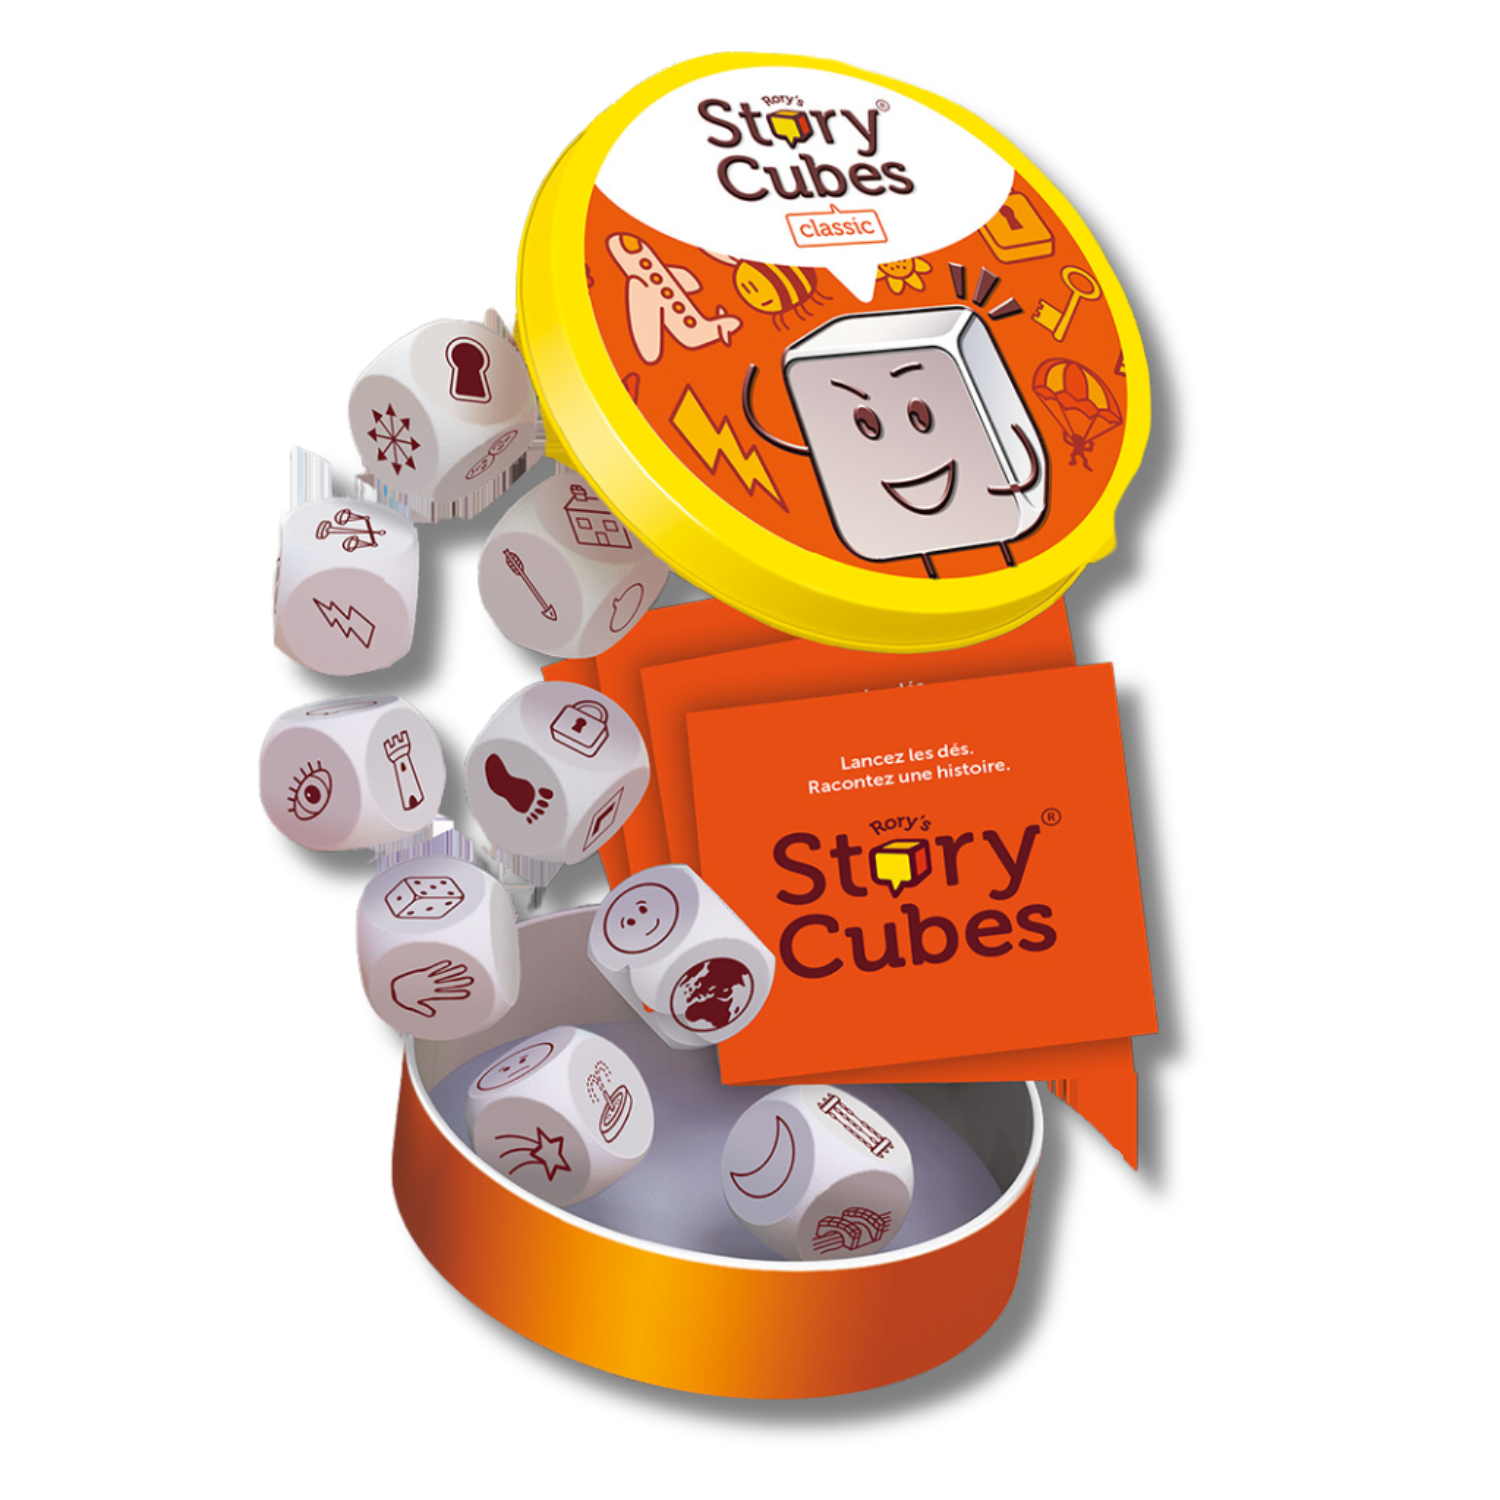 Juego de dados Story Cubes Clásico - ecopack 09 dados